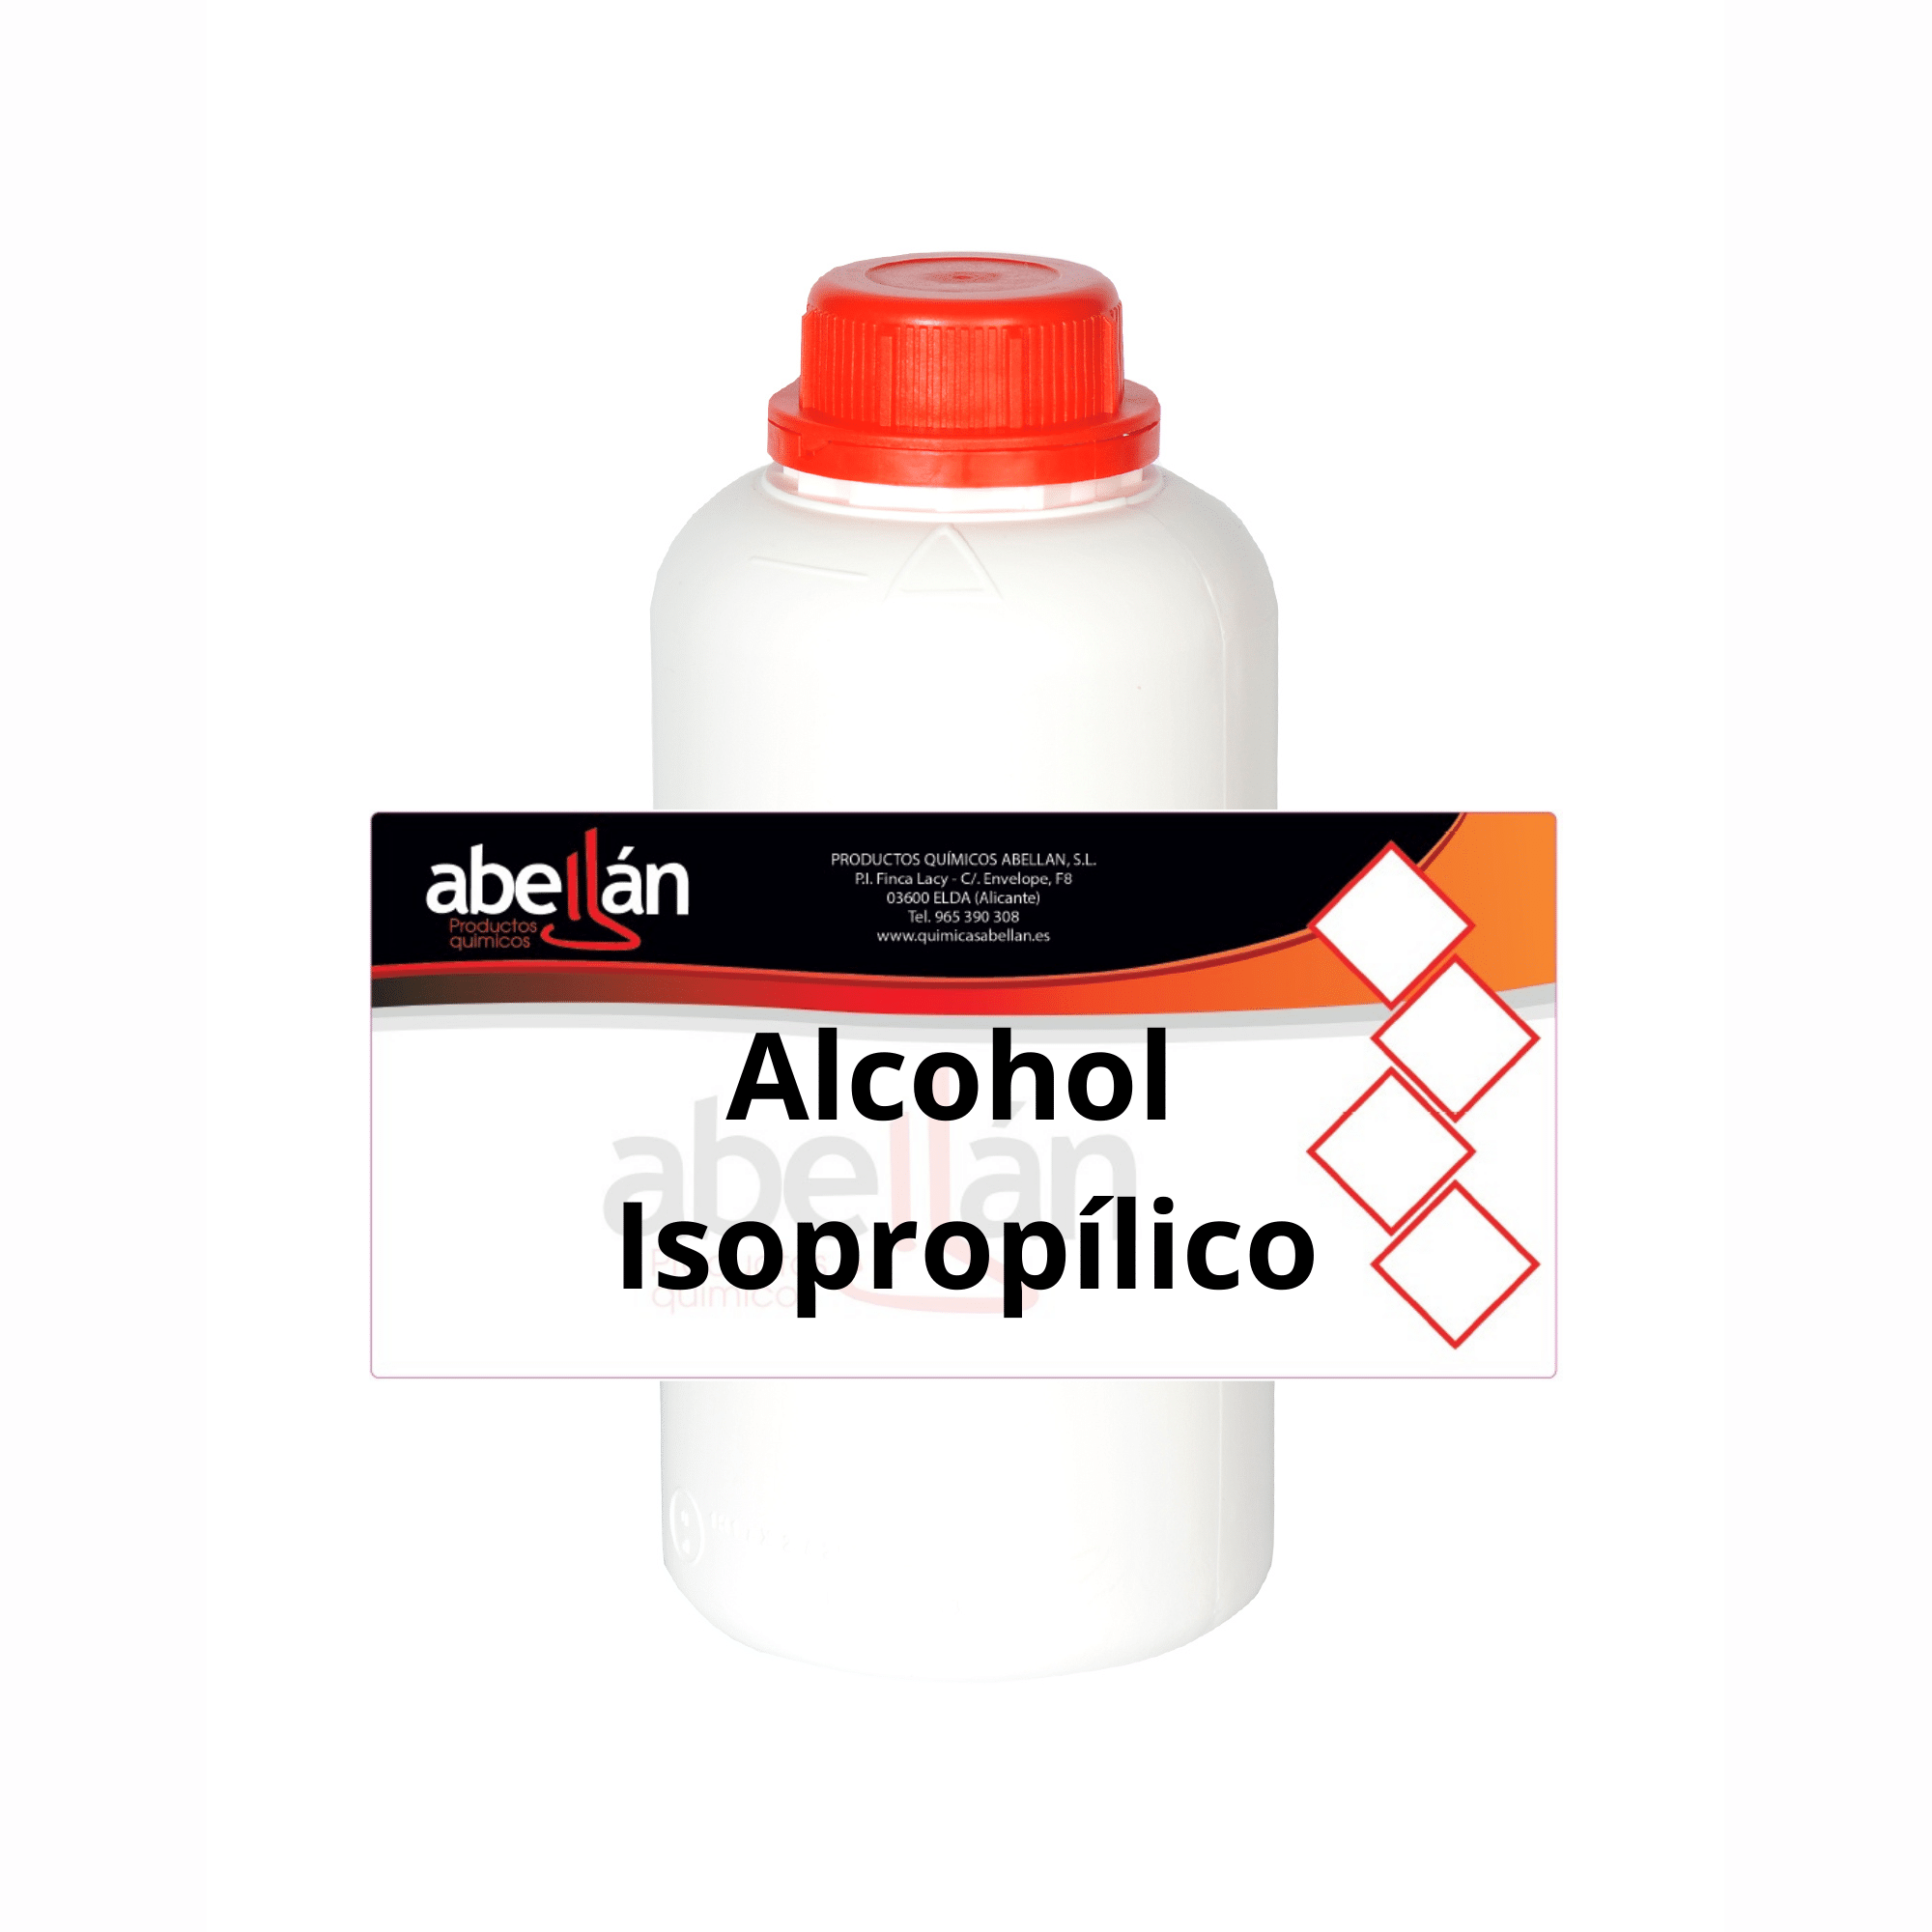 Alcohol isopropílico: ¿para qué sirve? - Suministros Antón